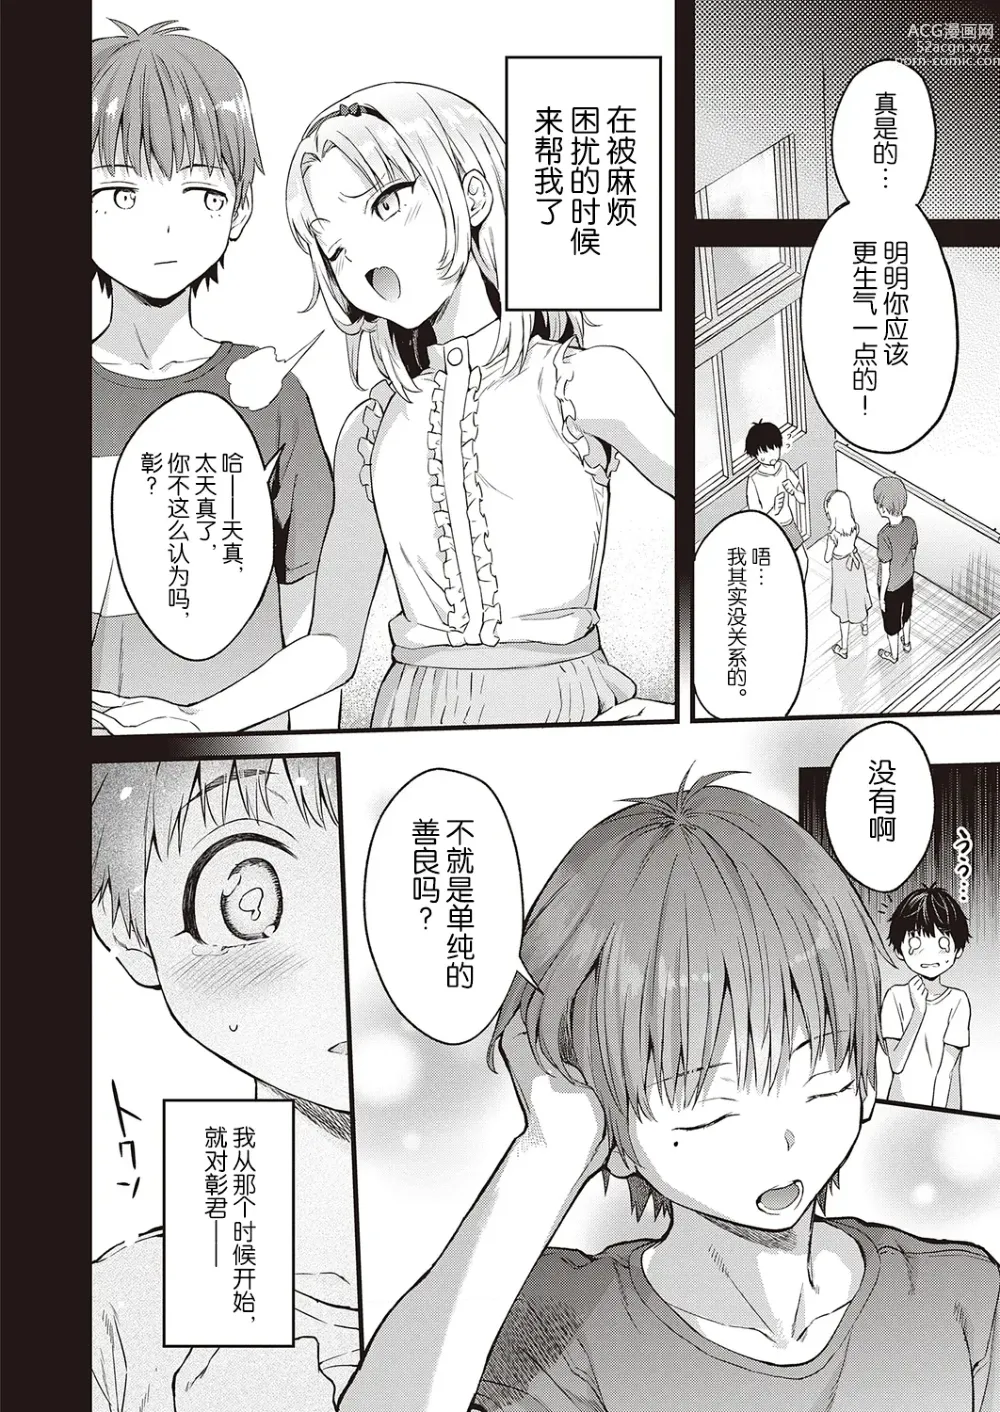 Page 4 of manga Hatsukoi Yuukei ni Somaru